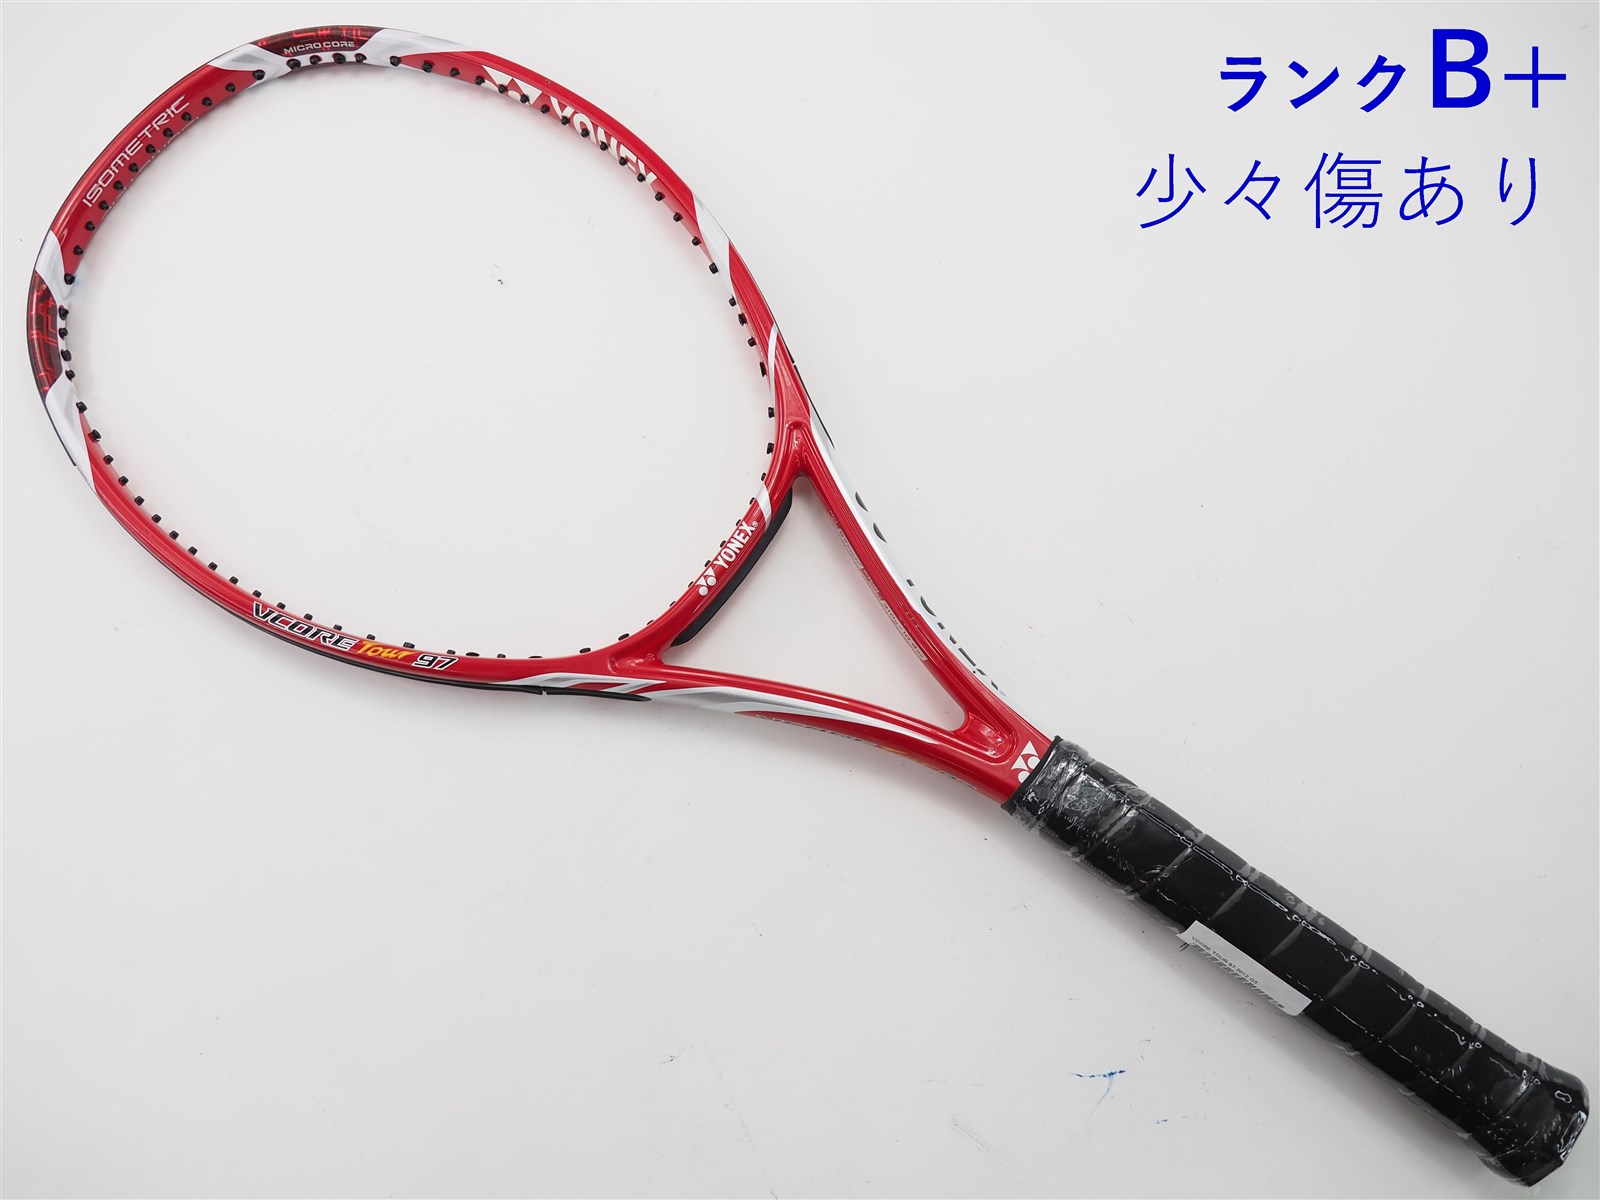 テニスラケット ヨネックス ブイコア ツアー エフ 97 2015年モデル【一